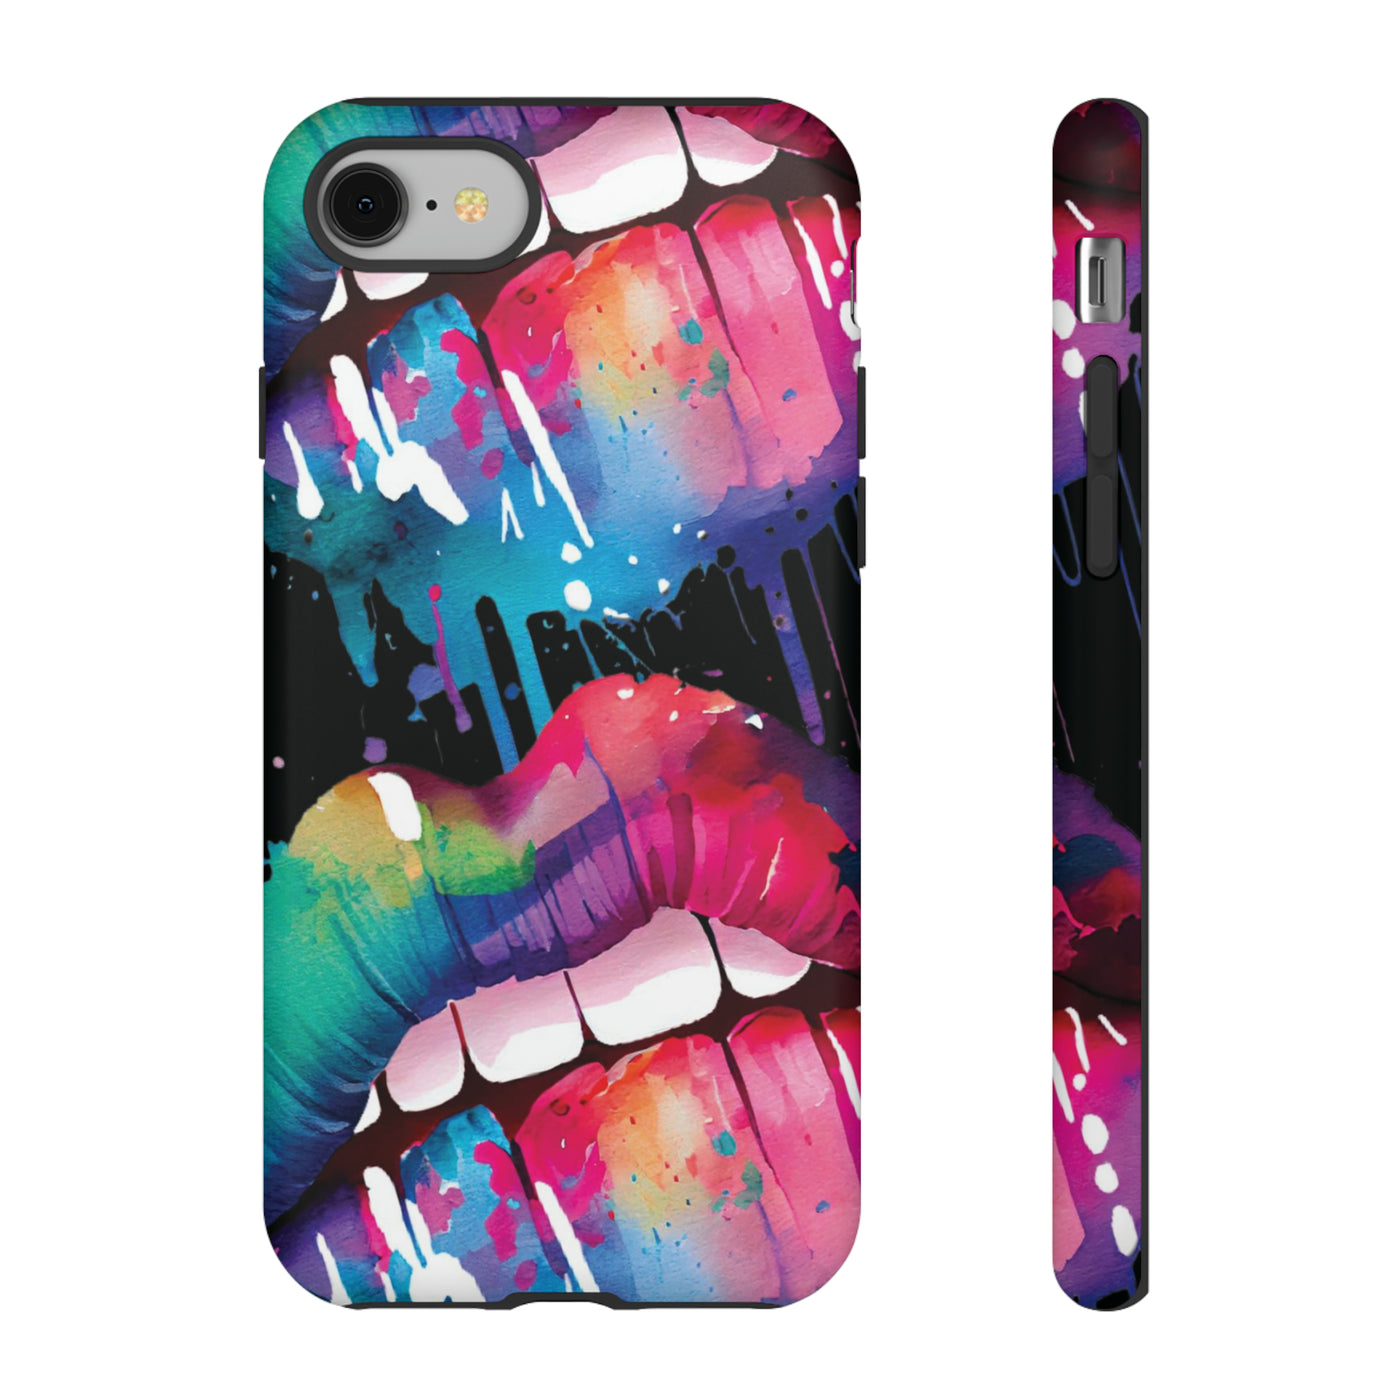 Cute IPhone Case | iPhone 15 Case | iPhone 15 Pro Max Case, Iphone 14 Case, Iphone 14 Pro Max Case IPhone Case for Art Lovers, Lips Smile